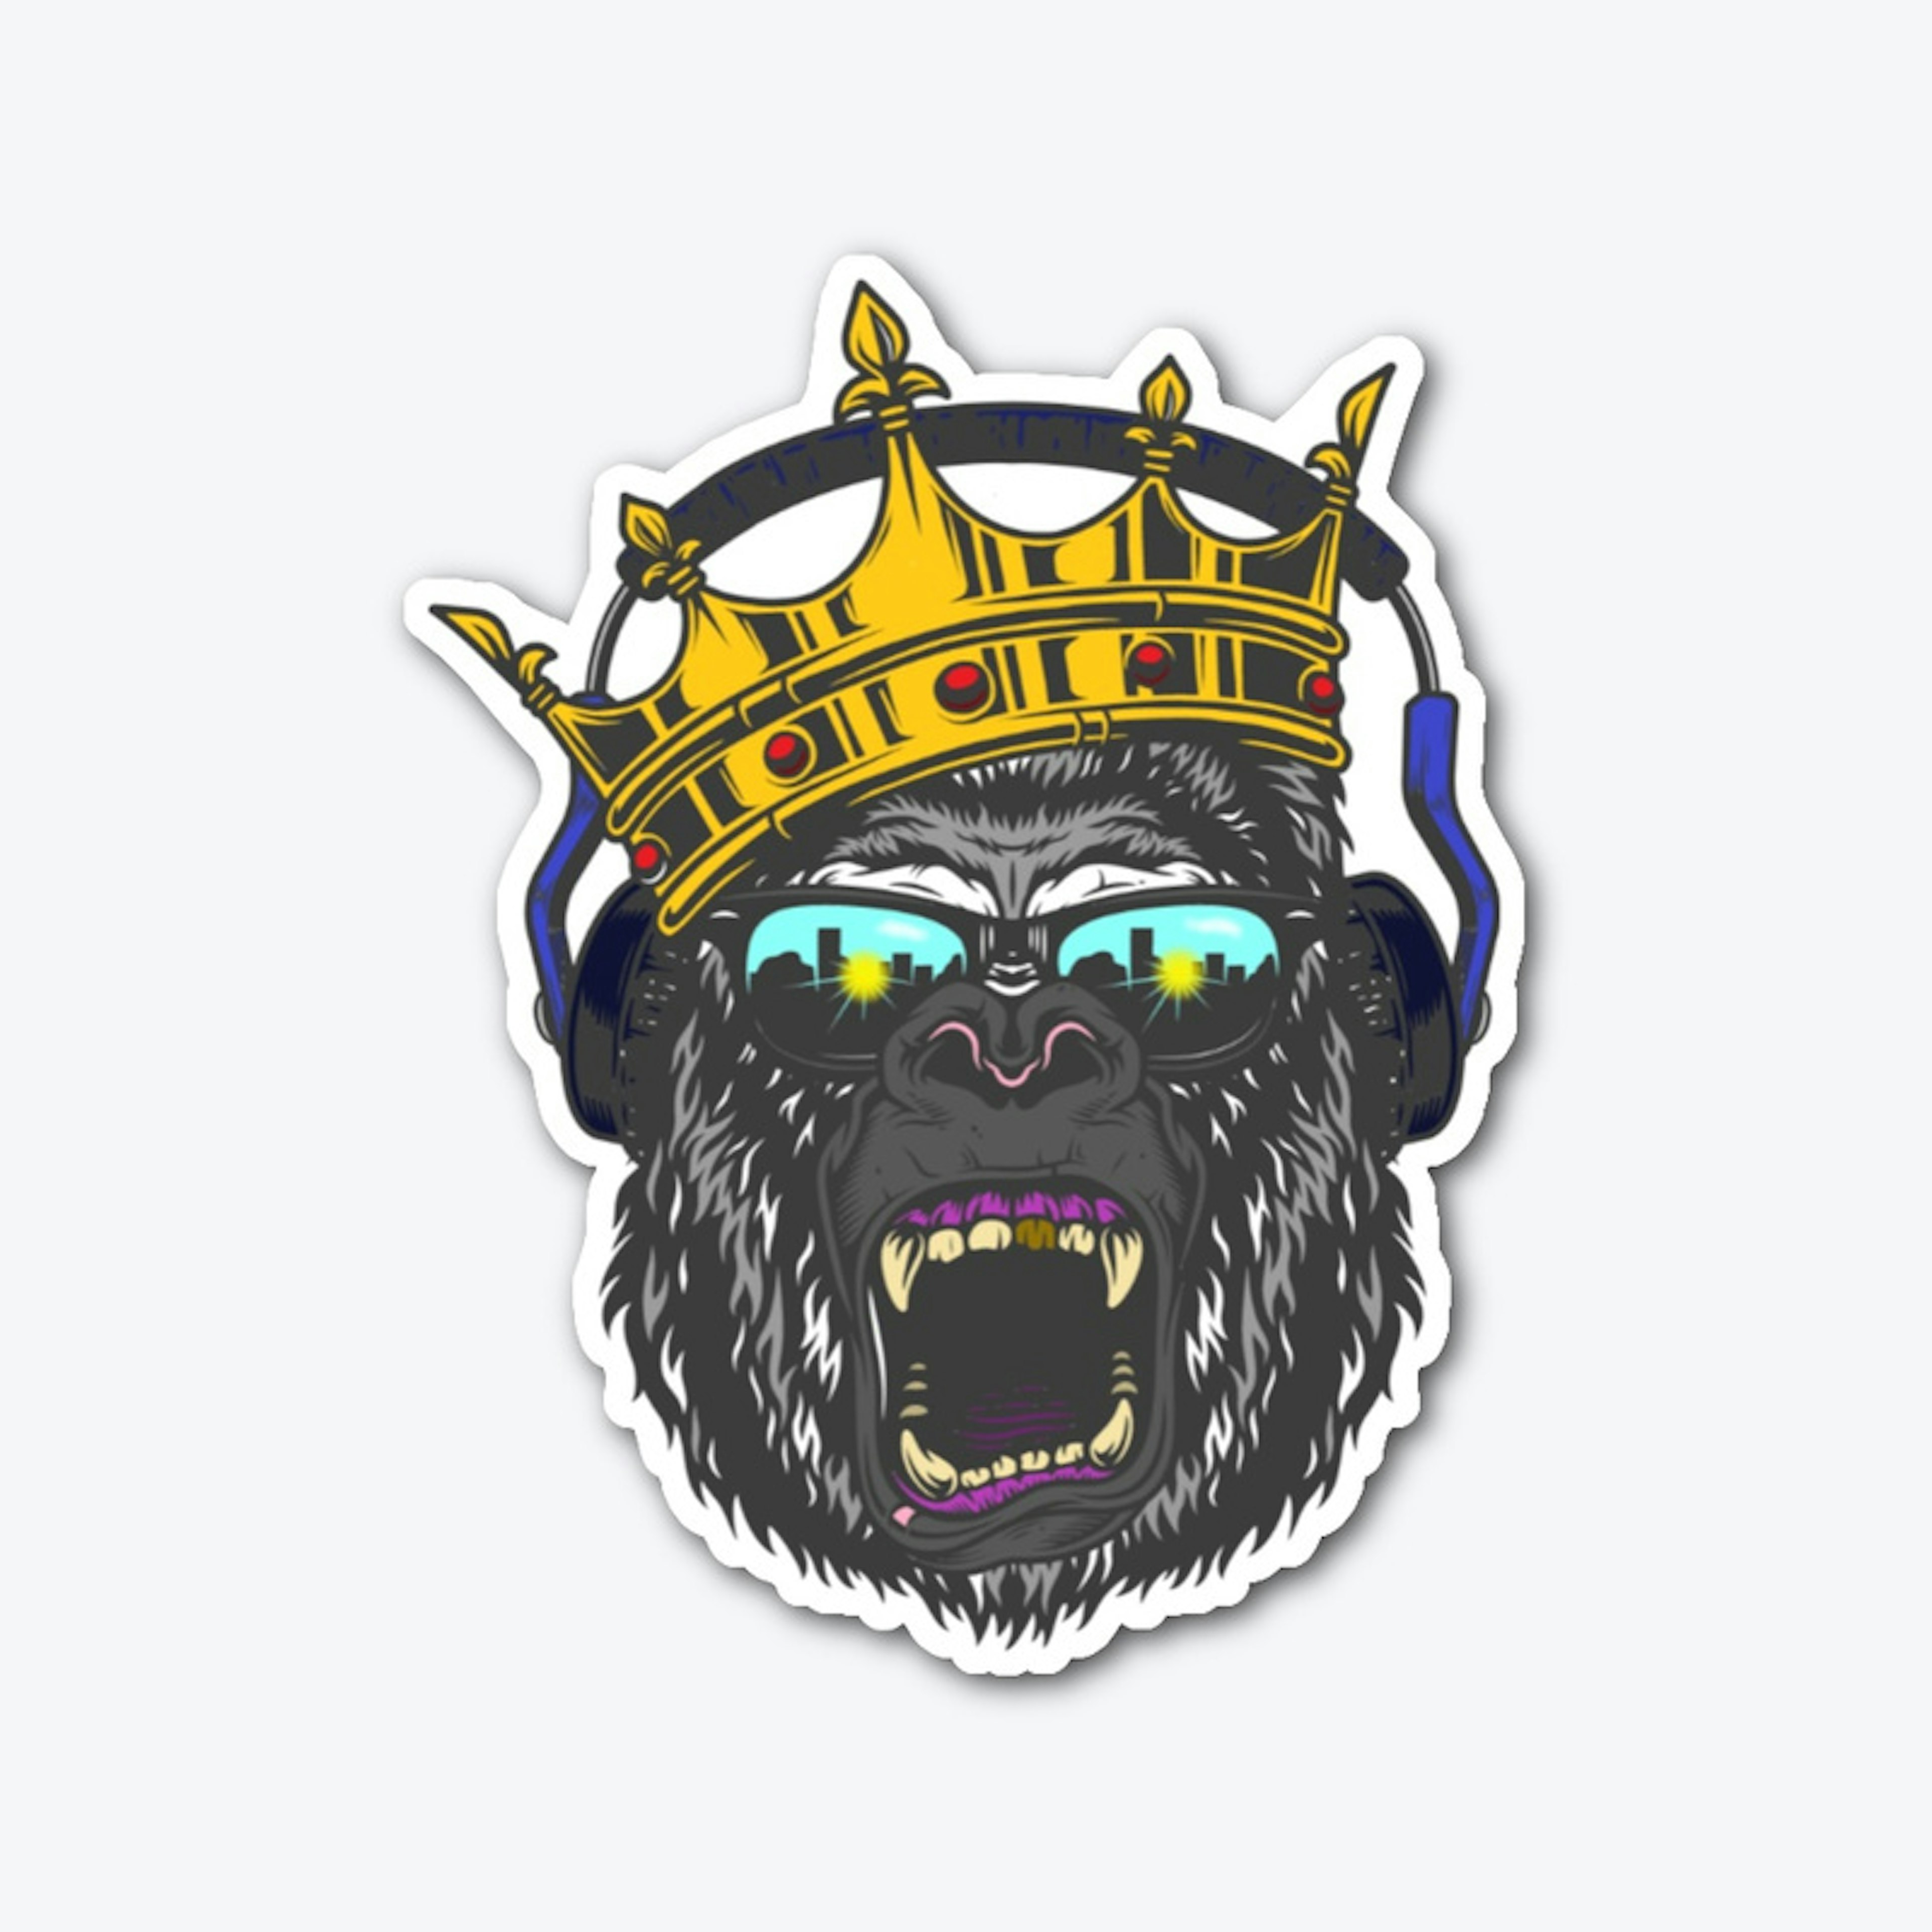 King Sticker